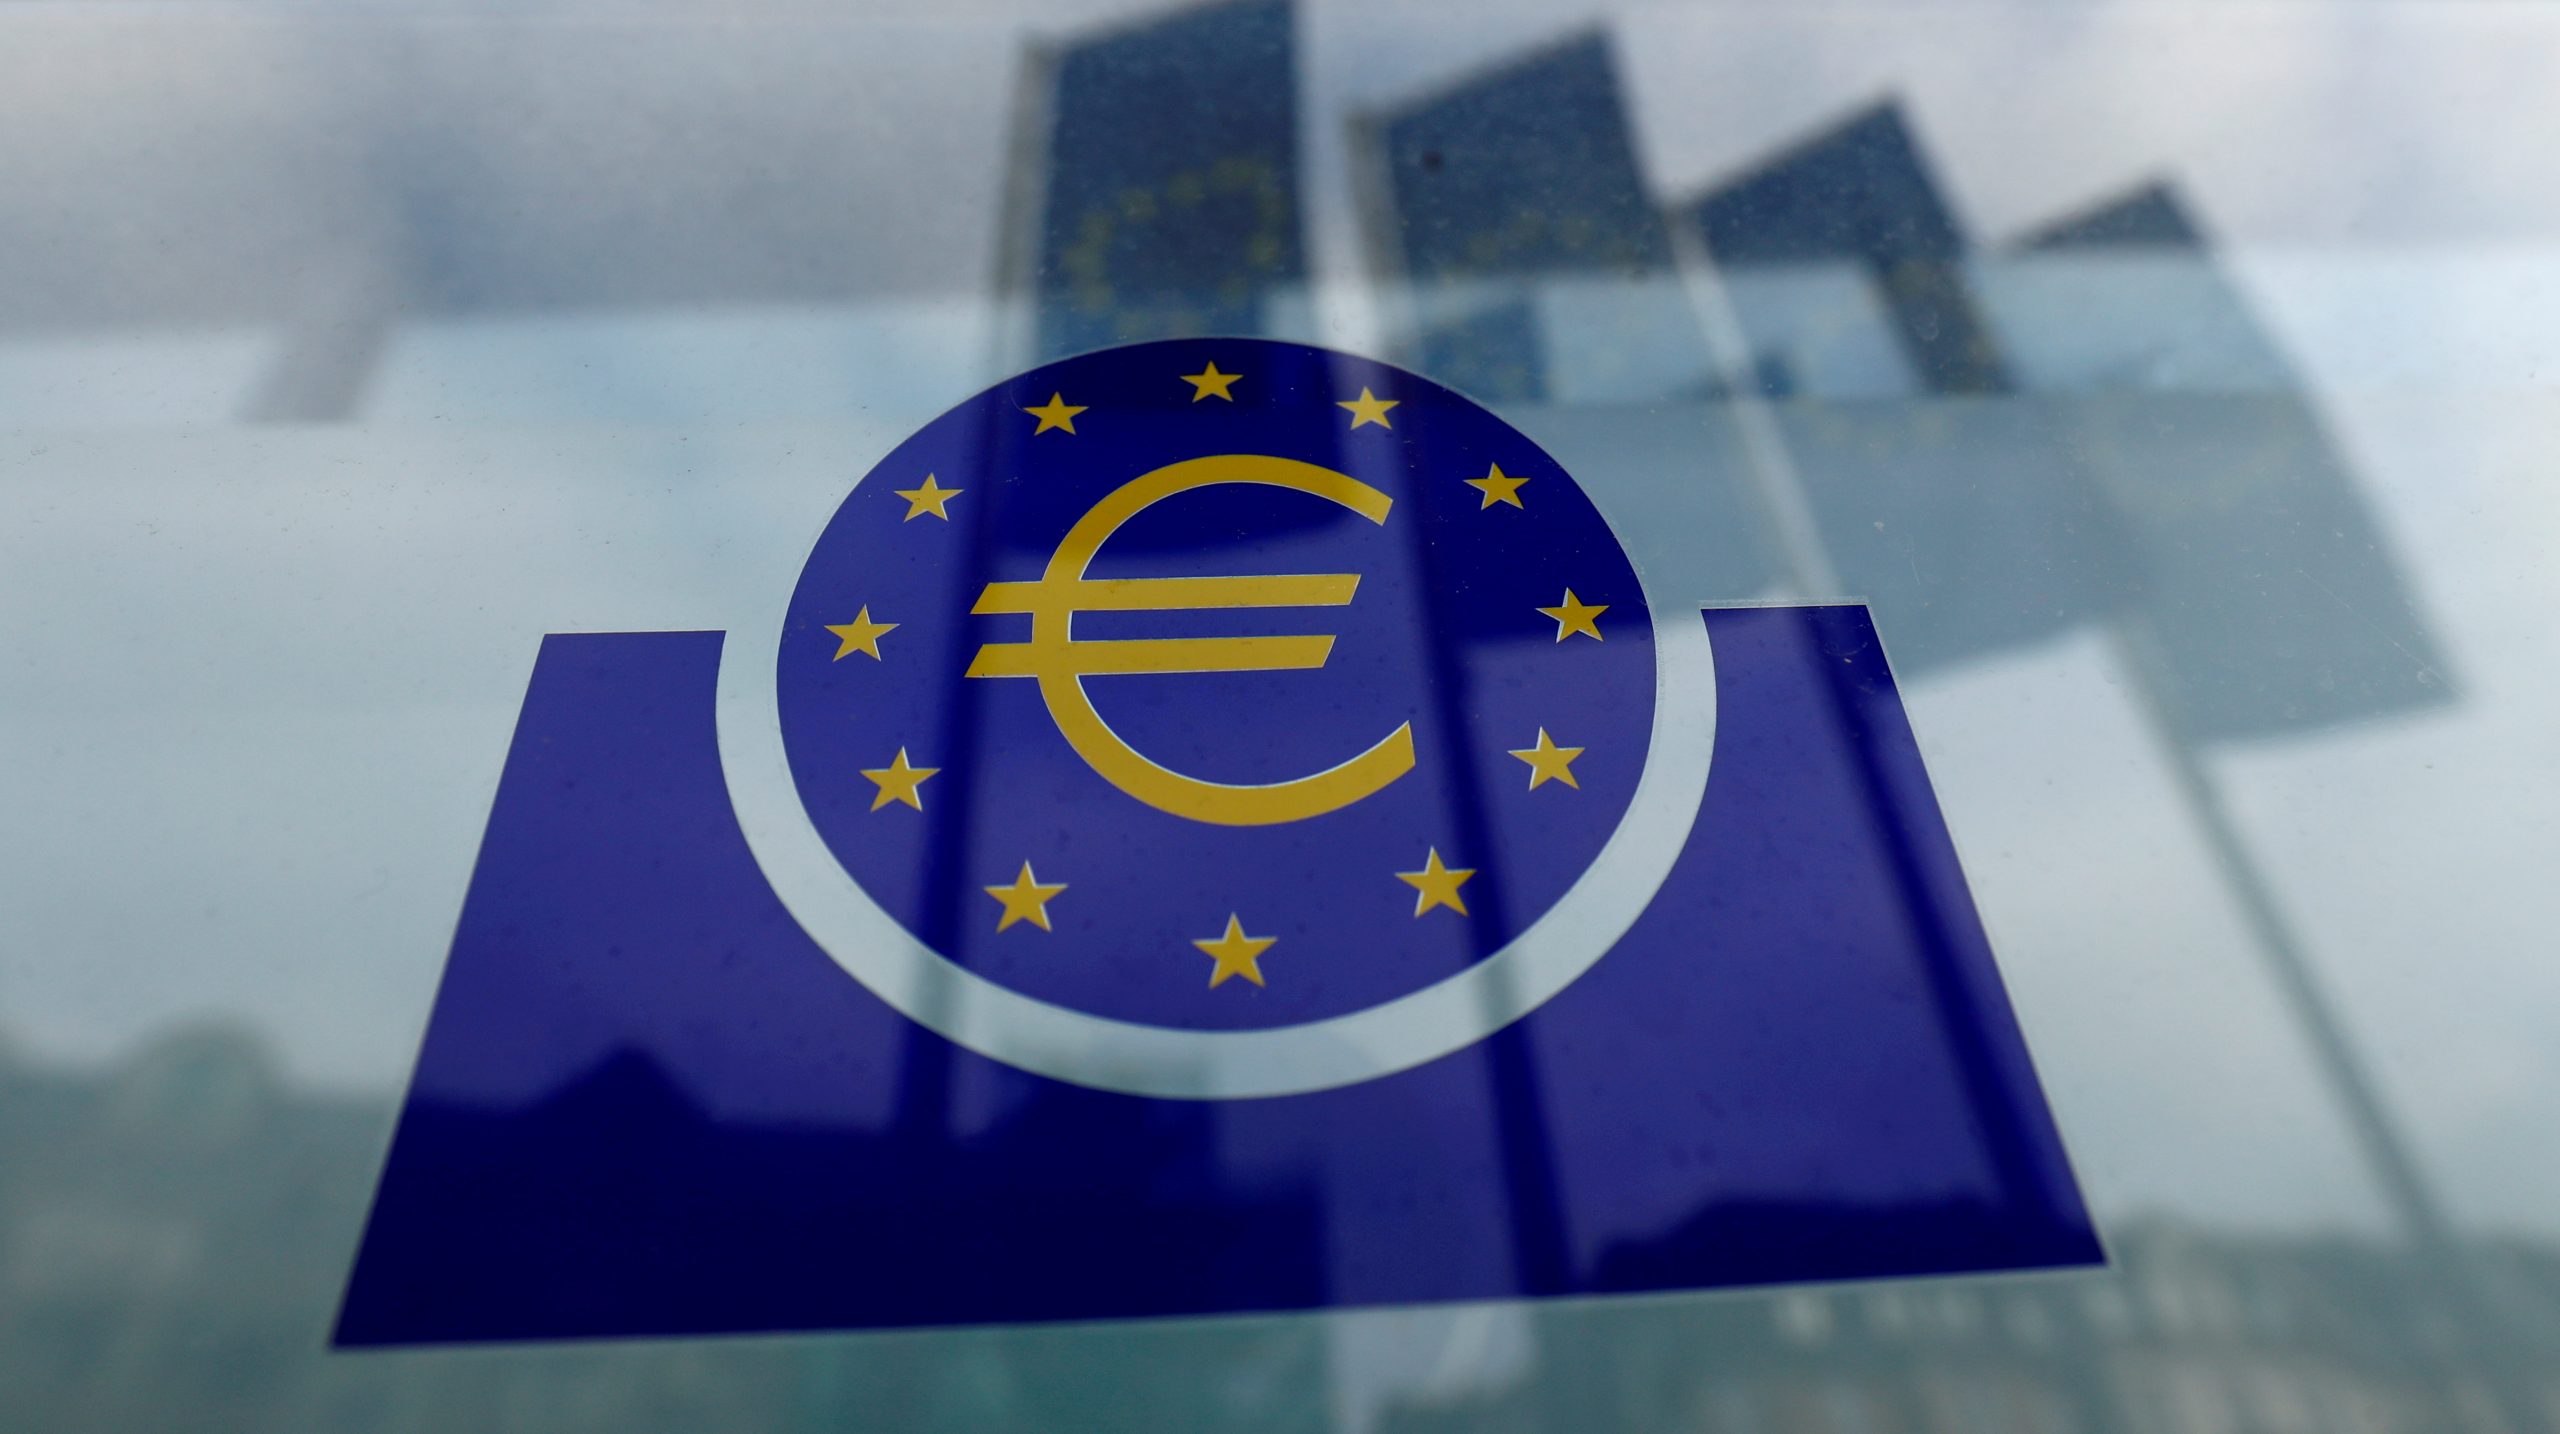 Αγορές: Τιμολογούν αύξηση των επιτοκίων κατά 125 μονάδες βάσης από την ΕΚΤ μέχρι τον Οκτώβριο